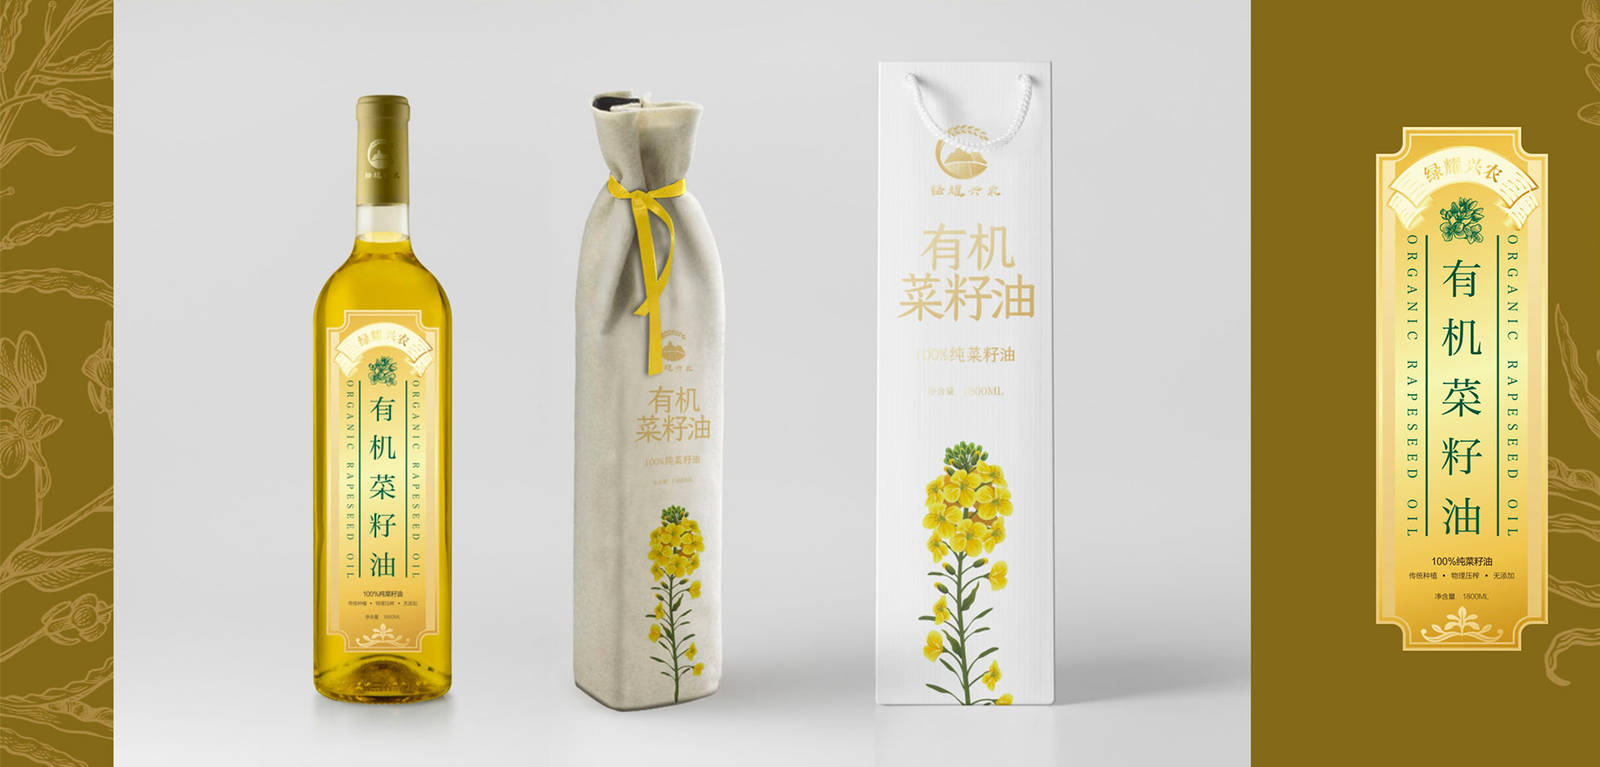 绿耀有机菜籽油形象系列瓶子包装设计